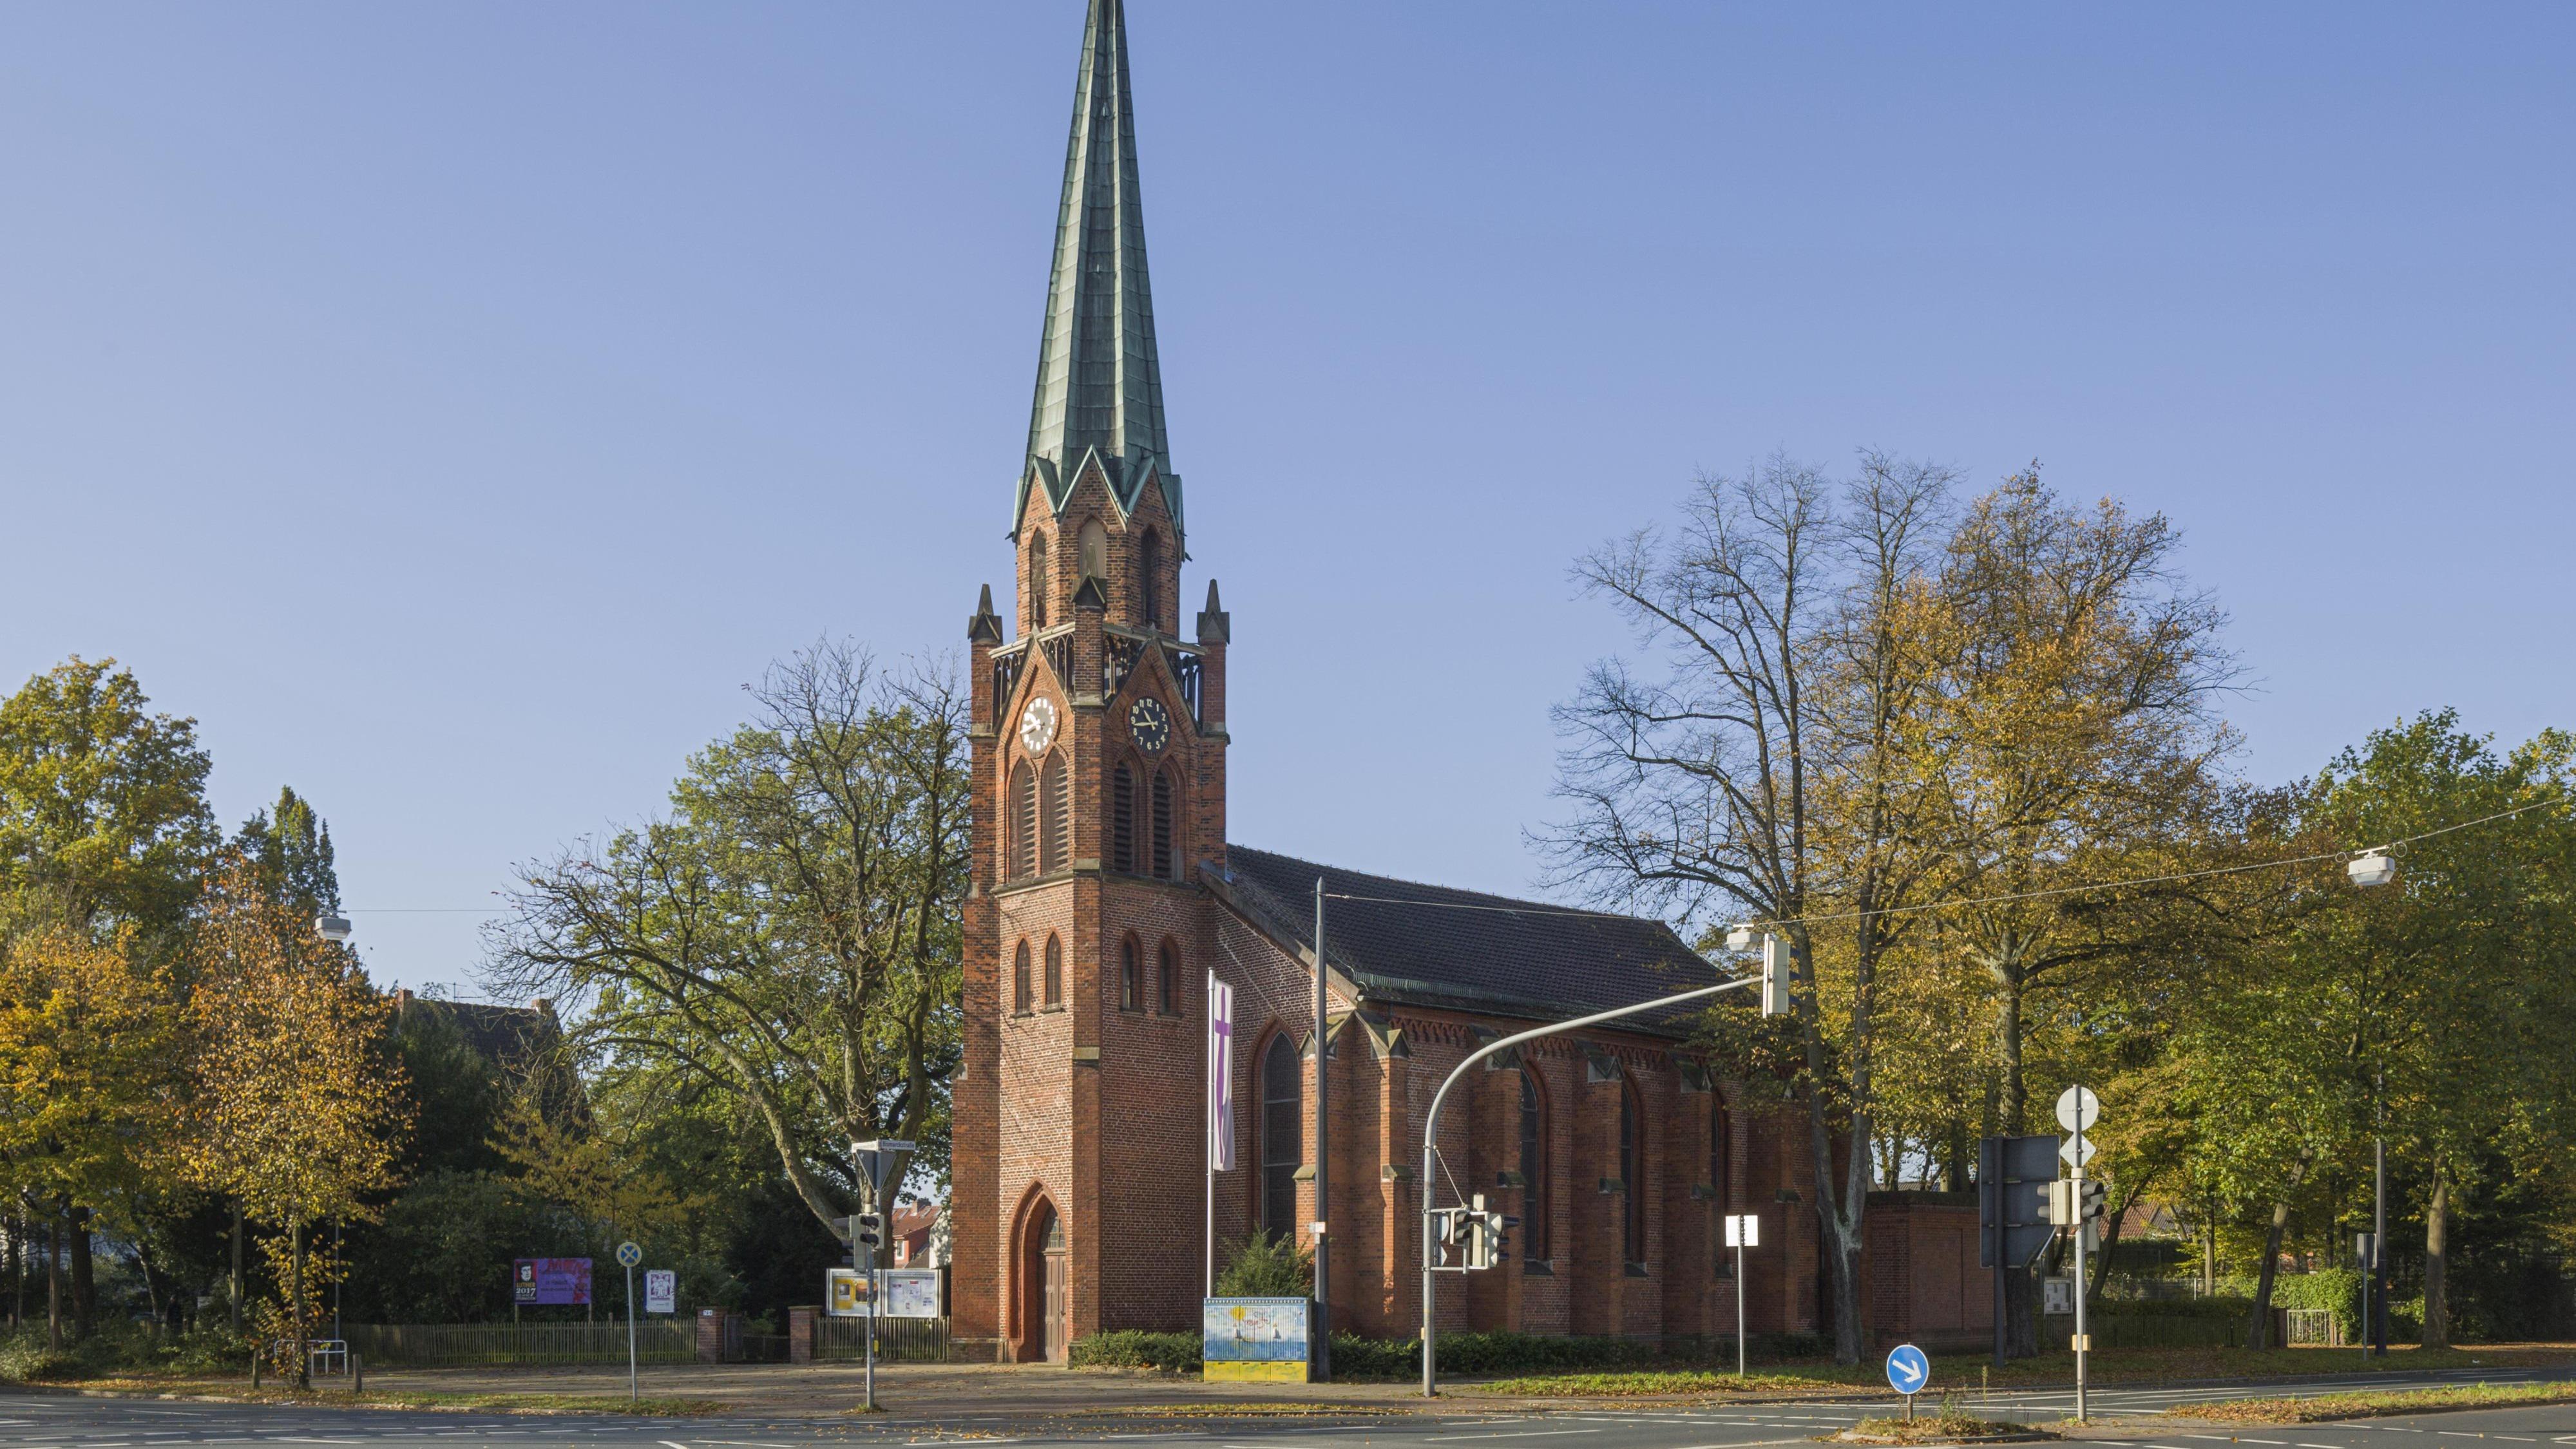 Bild 1 Alt Hasteder-Kirche - Evangelische Kirchengemeinde Alt-Hastedt in Bremen